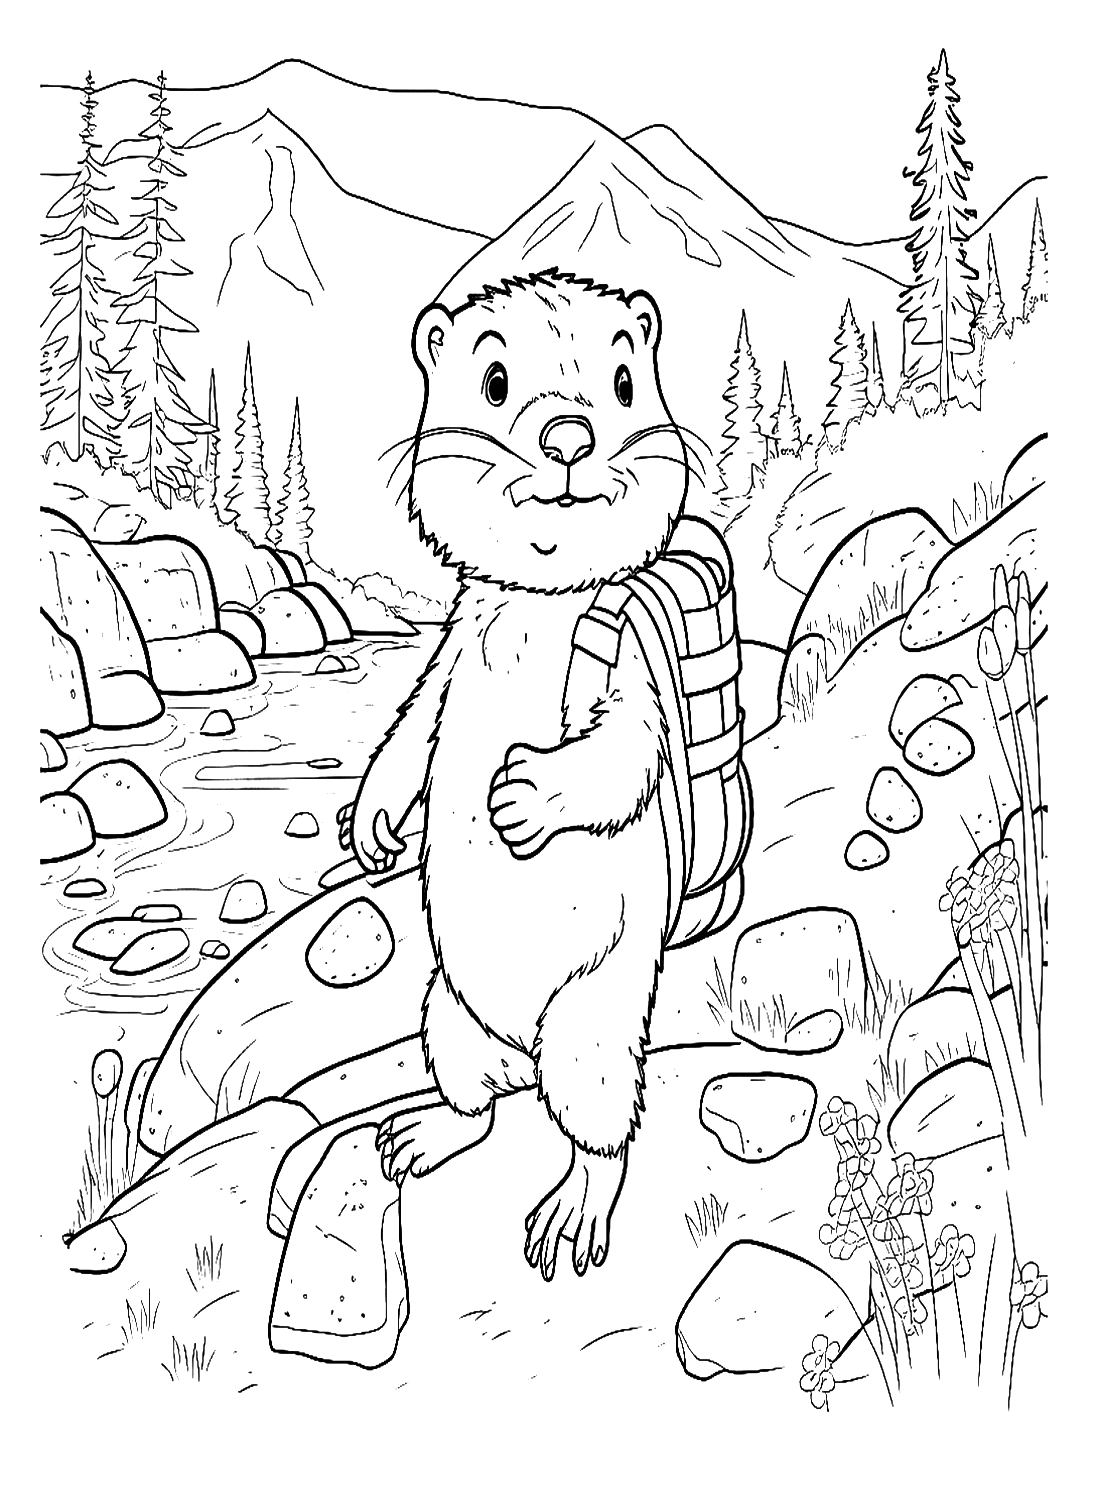 Marmot 的土拨鼠在河岸上行走